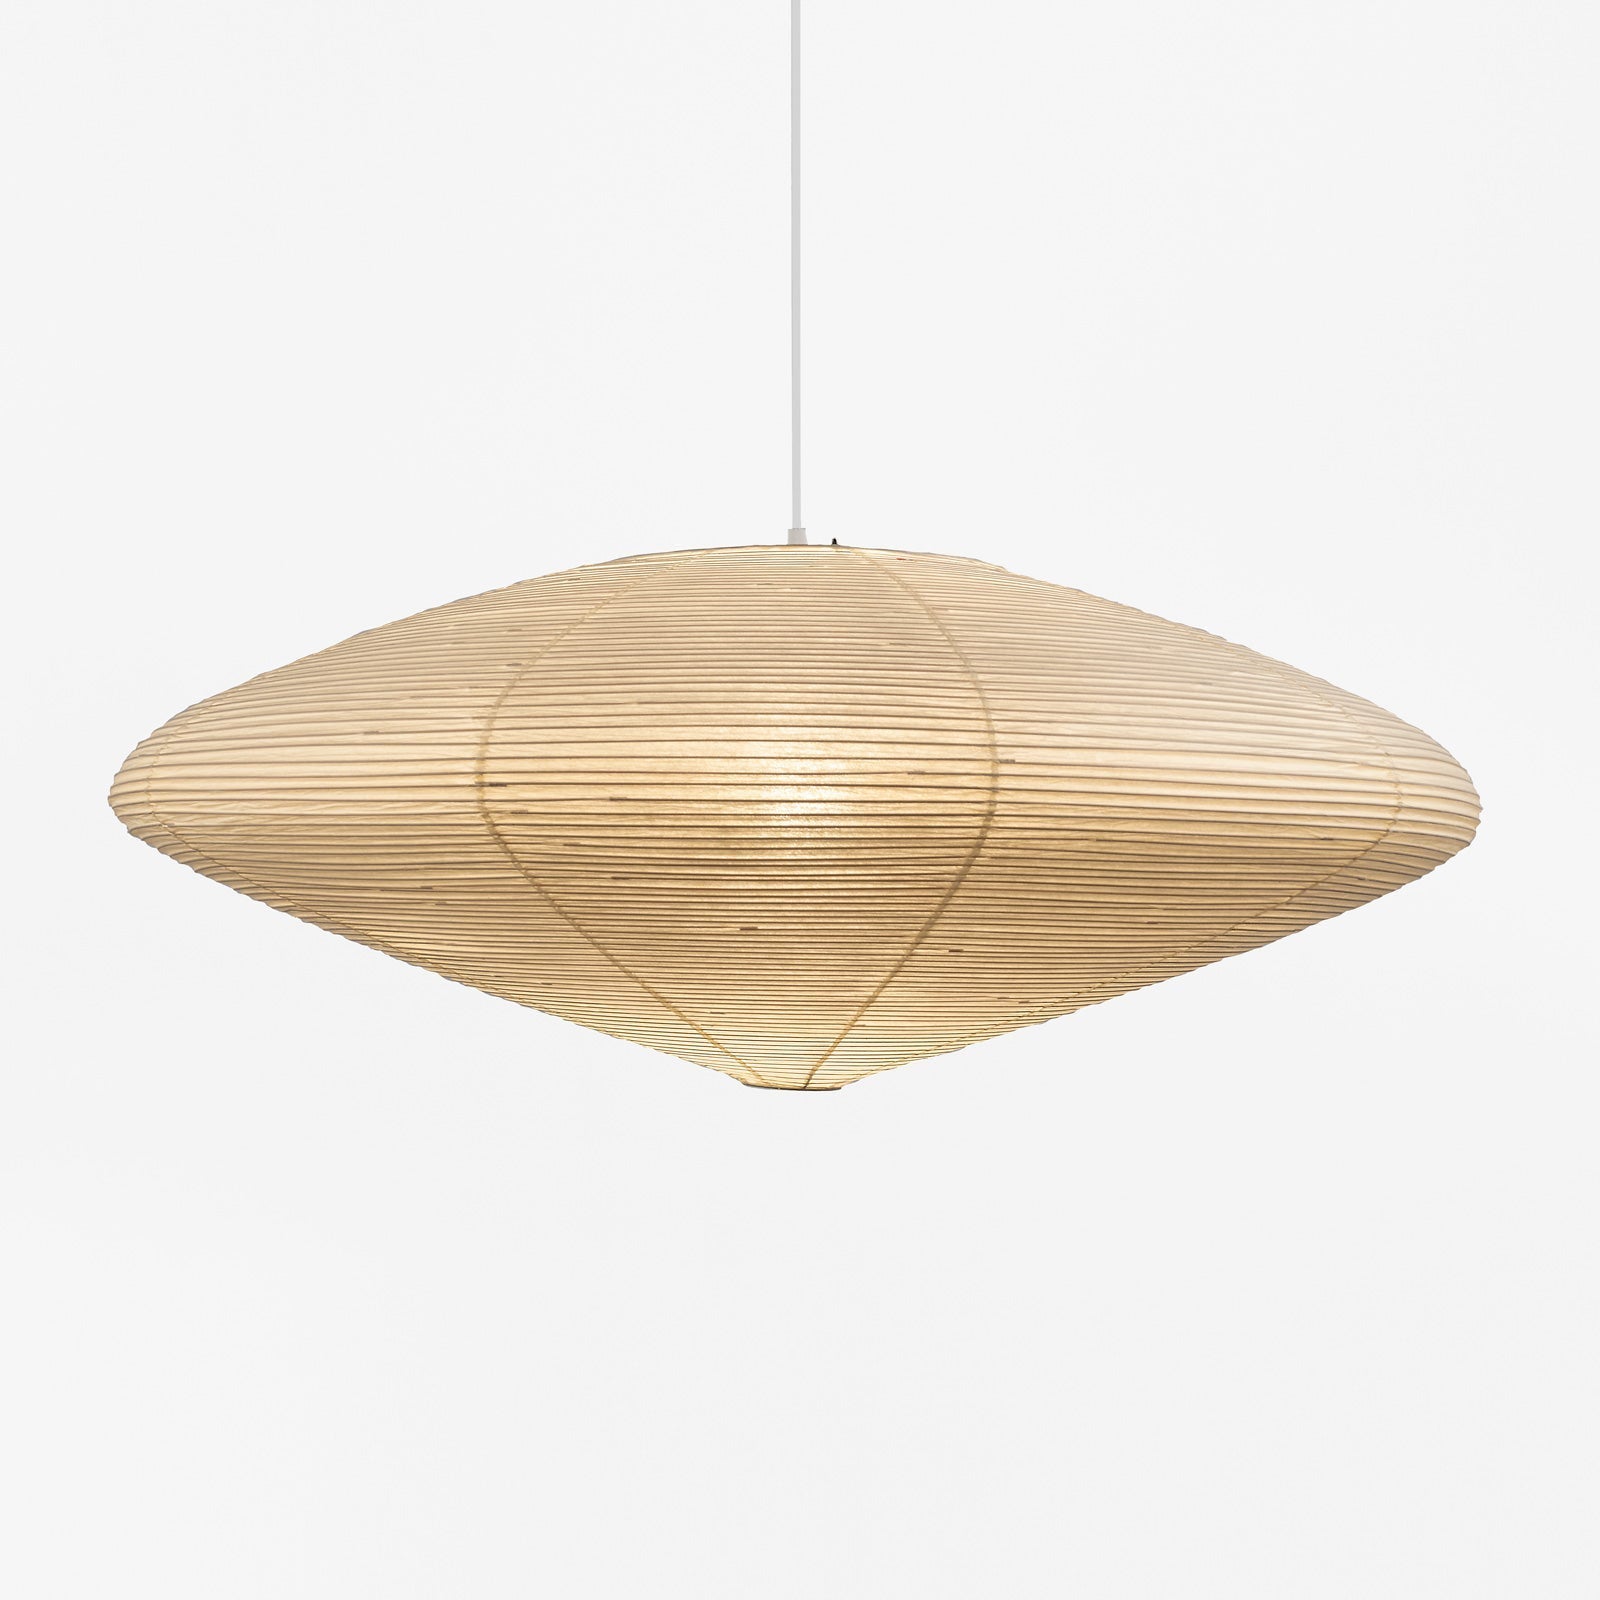 Akari 15a Paper Lantern Lamp - Elegant Japanese Design By Isamu Noguchi - Pendant Lamps